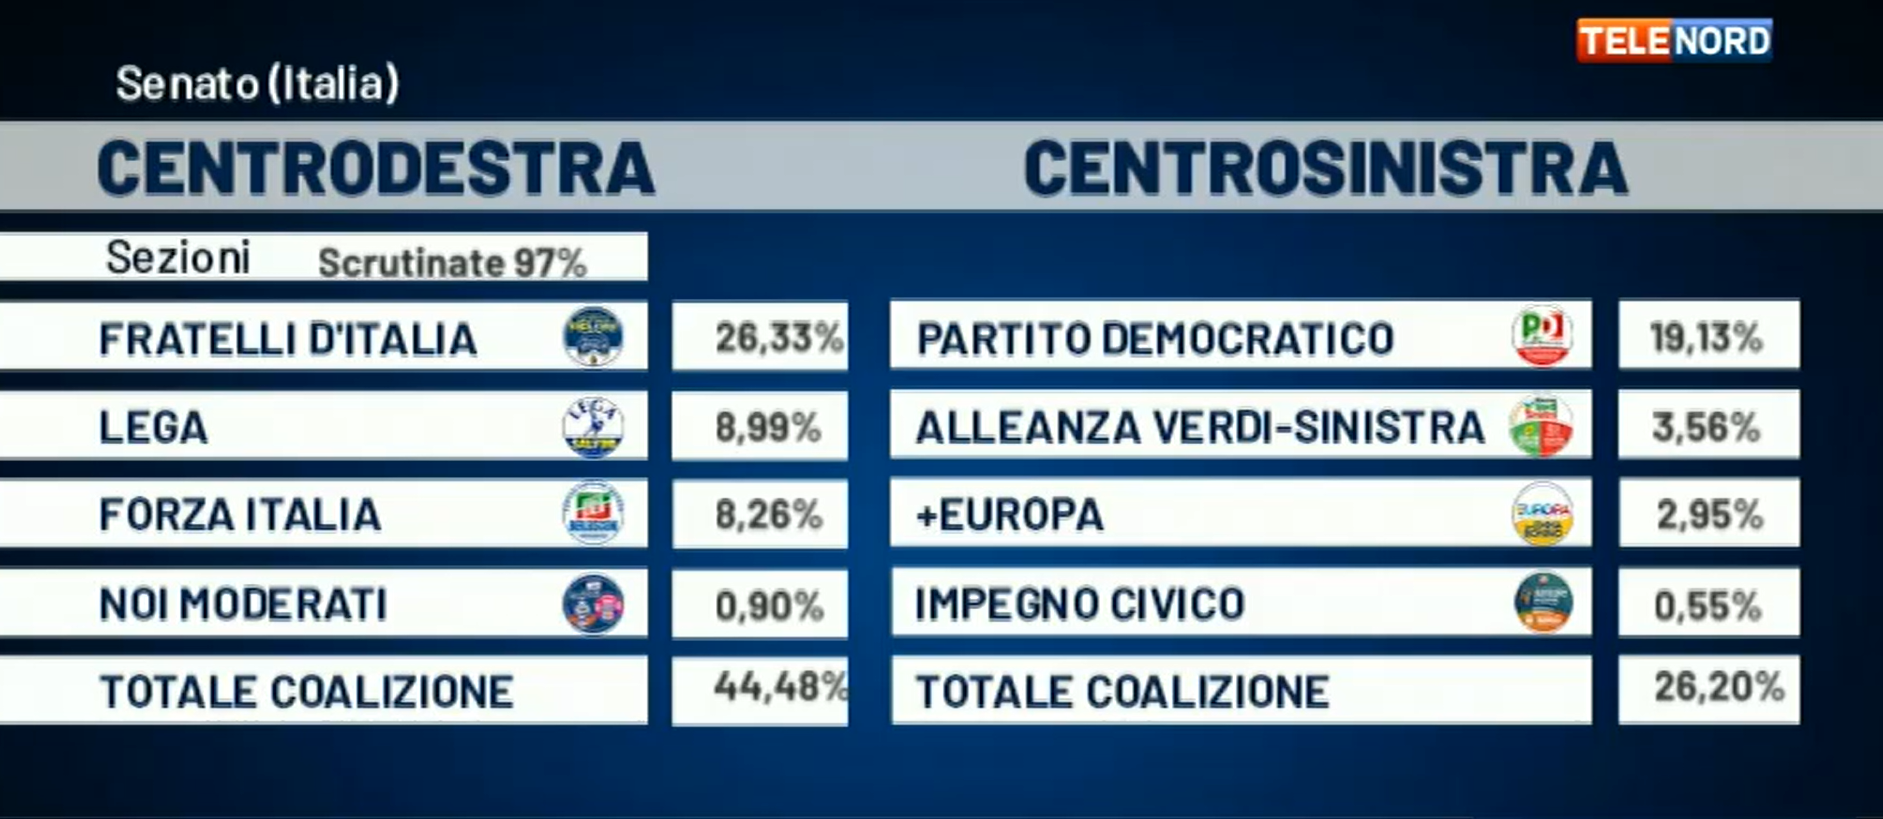 Elezioni, i collegi uninominali in Liguria: il centrodestra vince 5-1, da Pastorino l'unica vittoria del centrosinistra